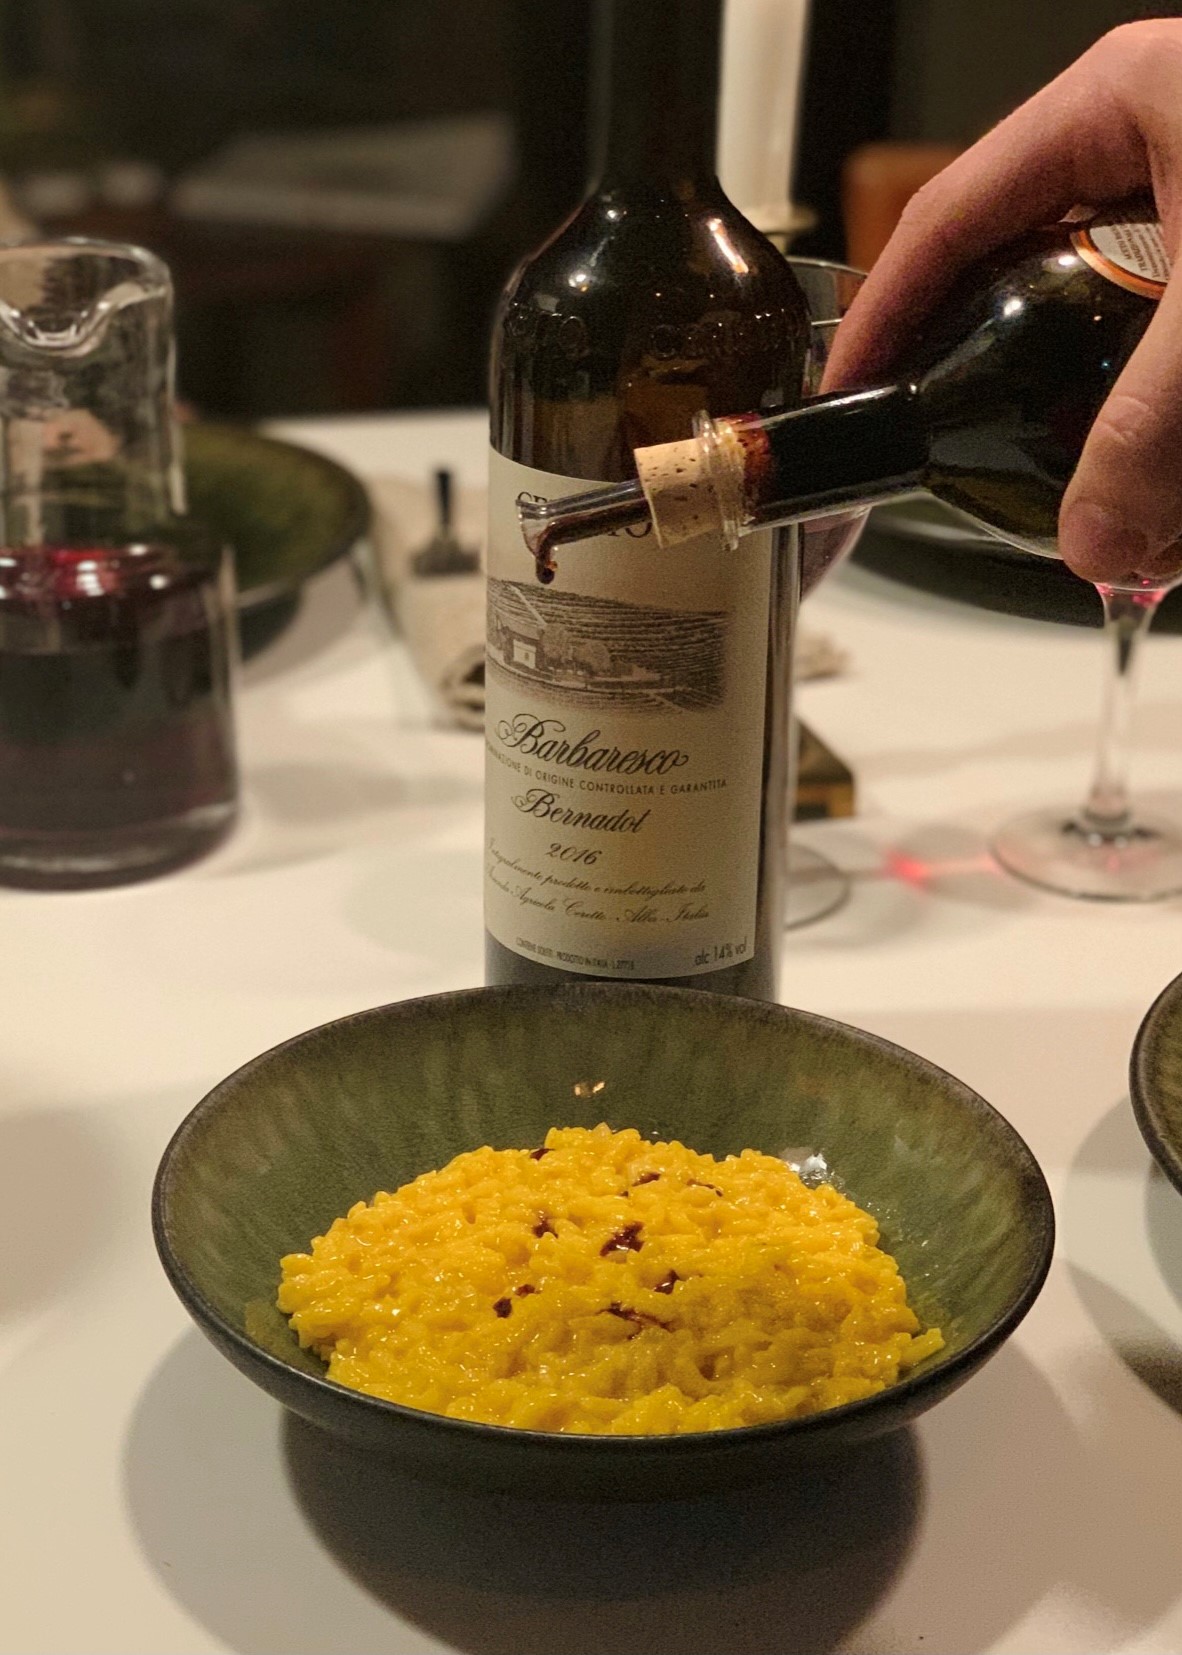 Risotto Saffron and Traditional Balsamic Vinegar